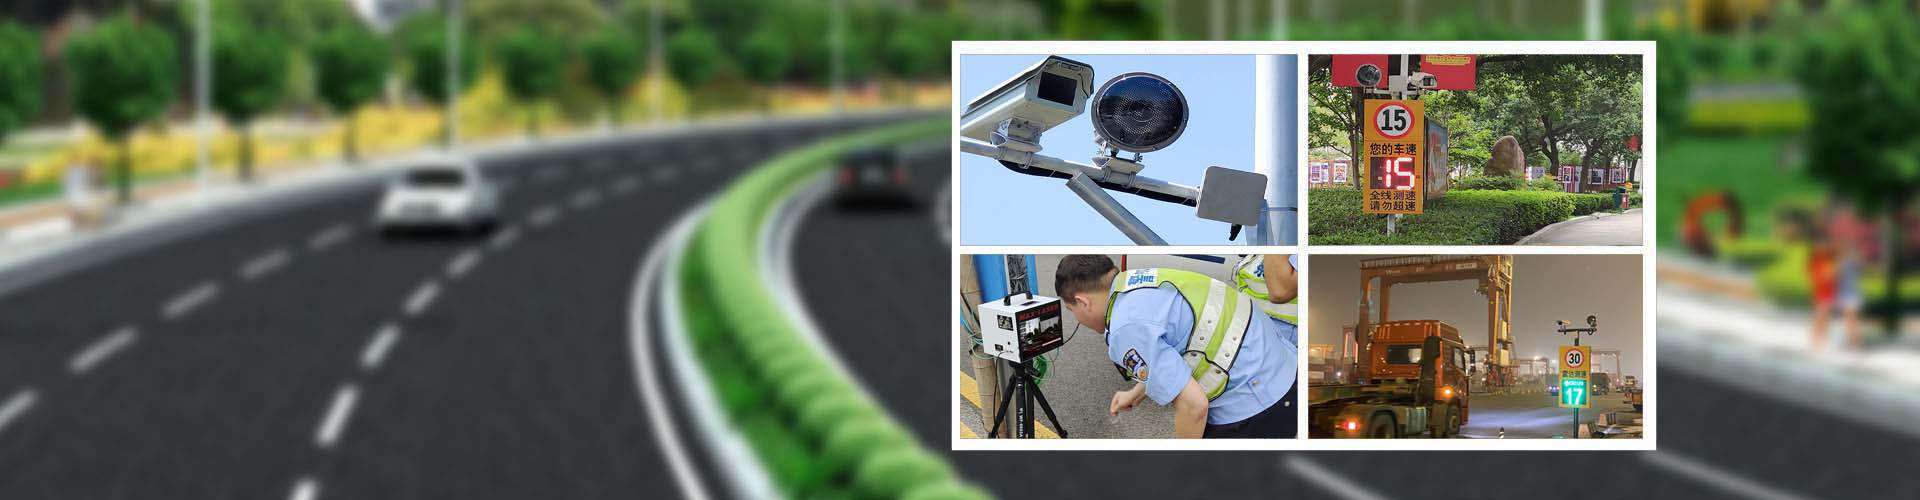 部隊營區雙向安裝車速提示超速拍照系統